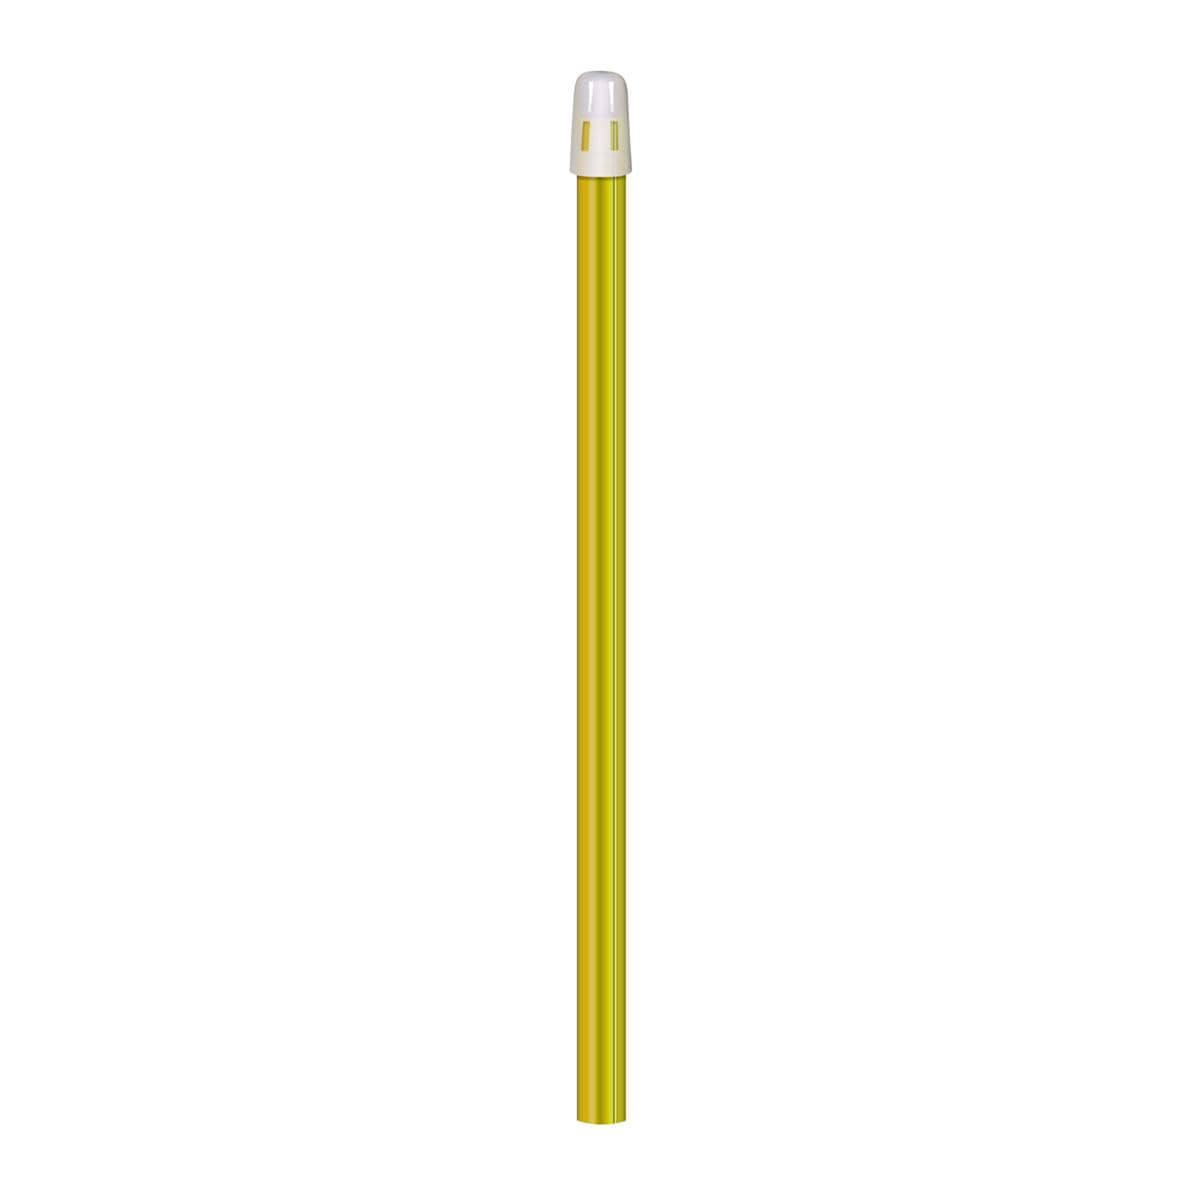 Speekselzuigers met afneembare dop (15 cm) - Geel, 100 stuks